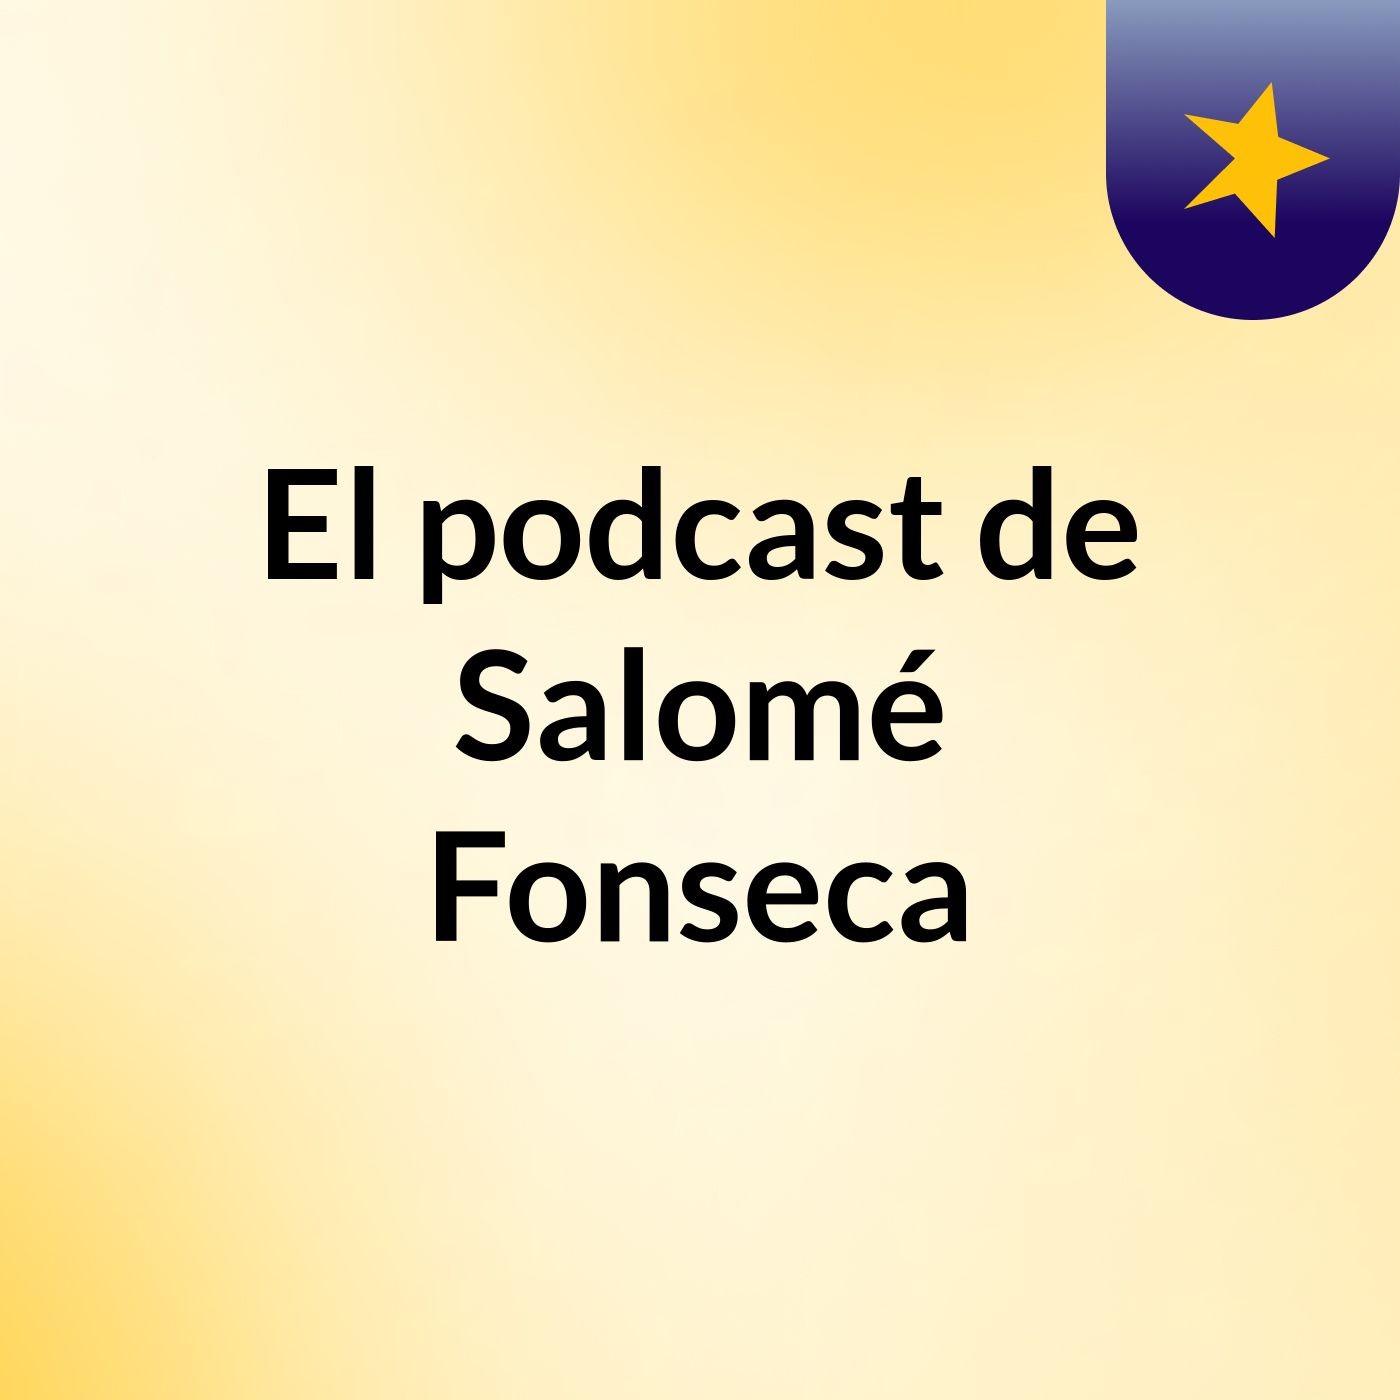 El podcast de Salomé Fonseca